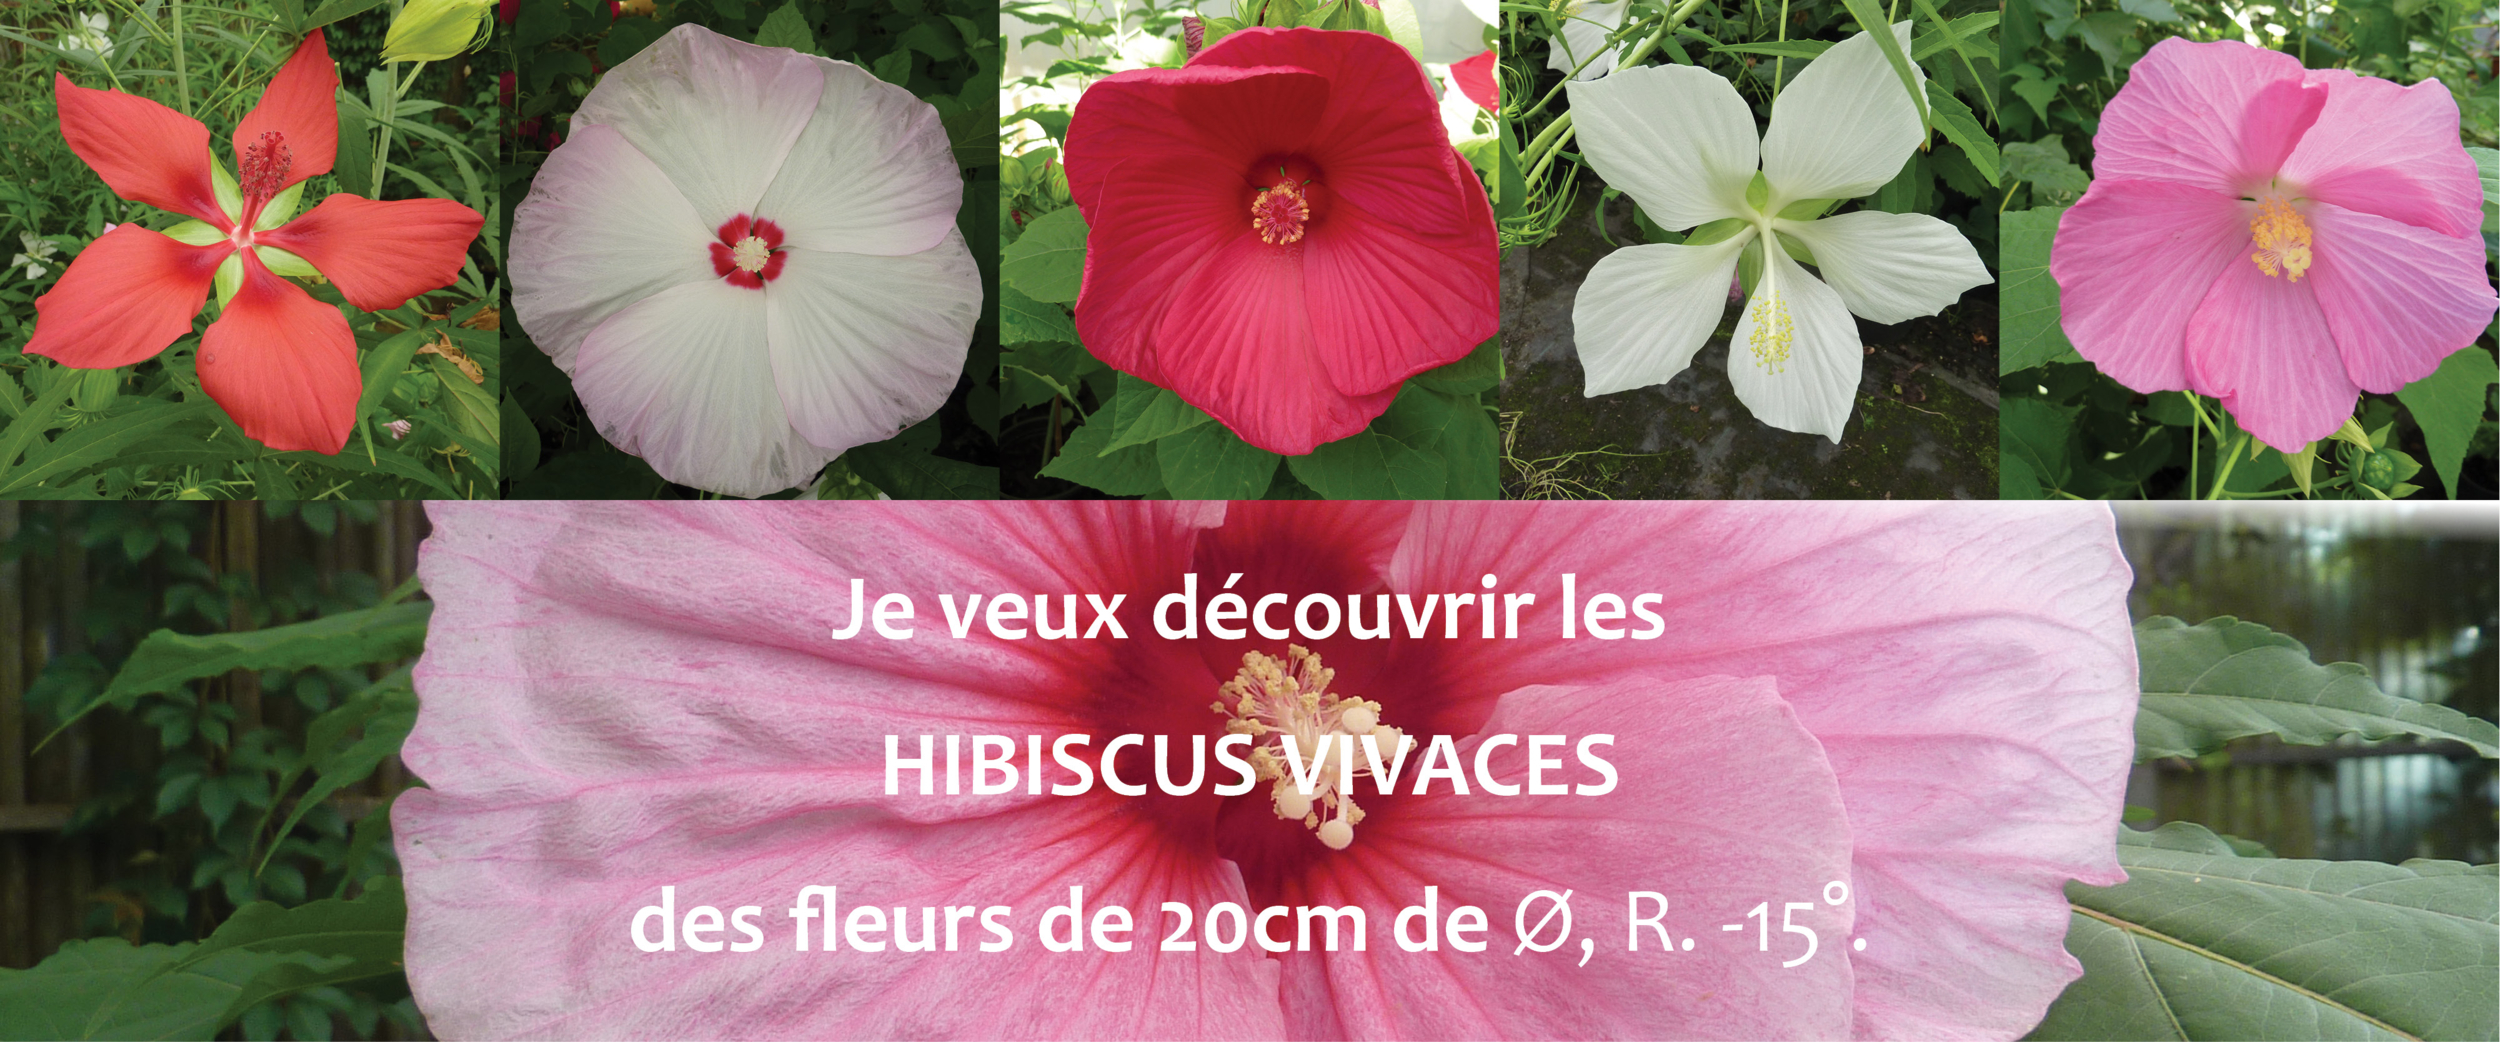 slider hibiscus vivaces